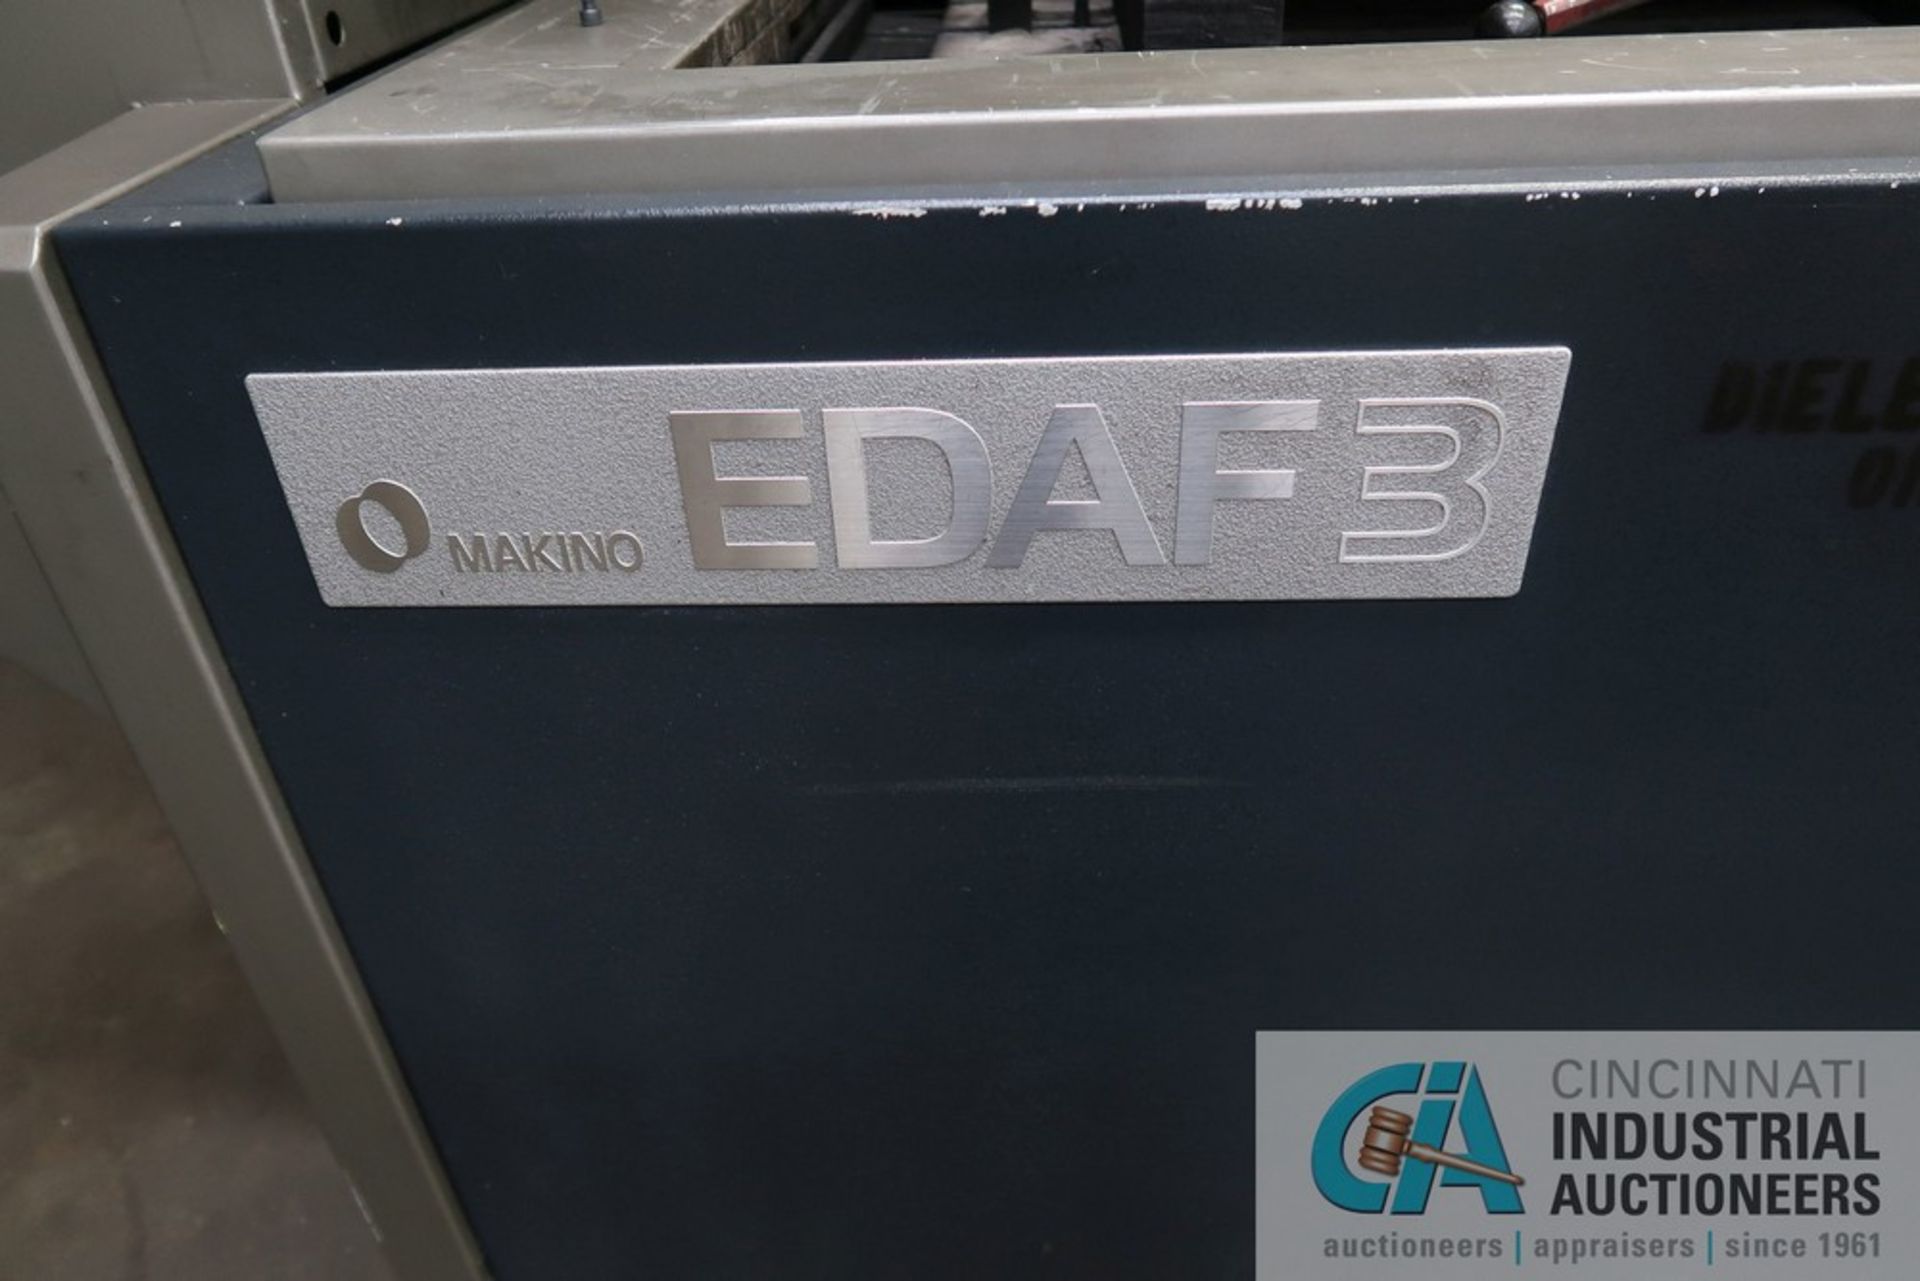 MAKINO MODEL EDAF3 CNC DIE SINKER EDM; S/N E80274, 27.5" X 19.7" TABLE, (New 2013) - Image 12 of 13